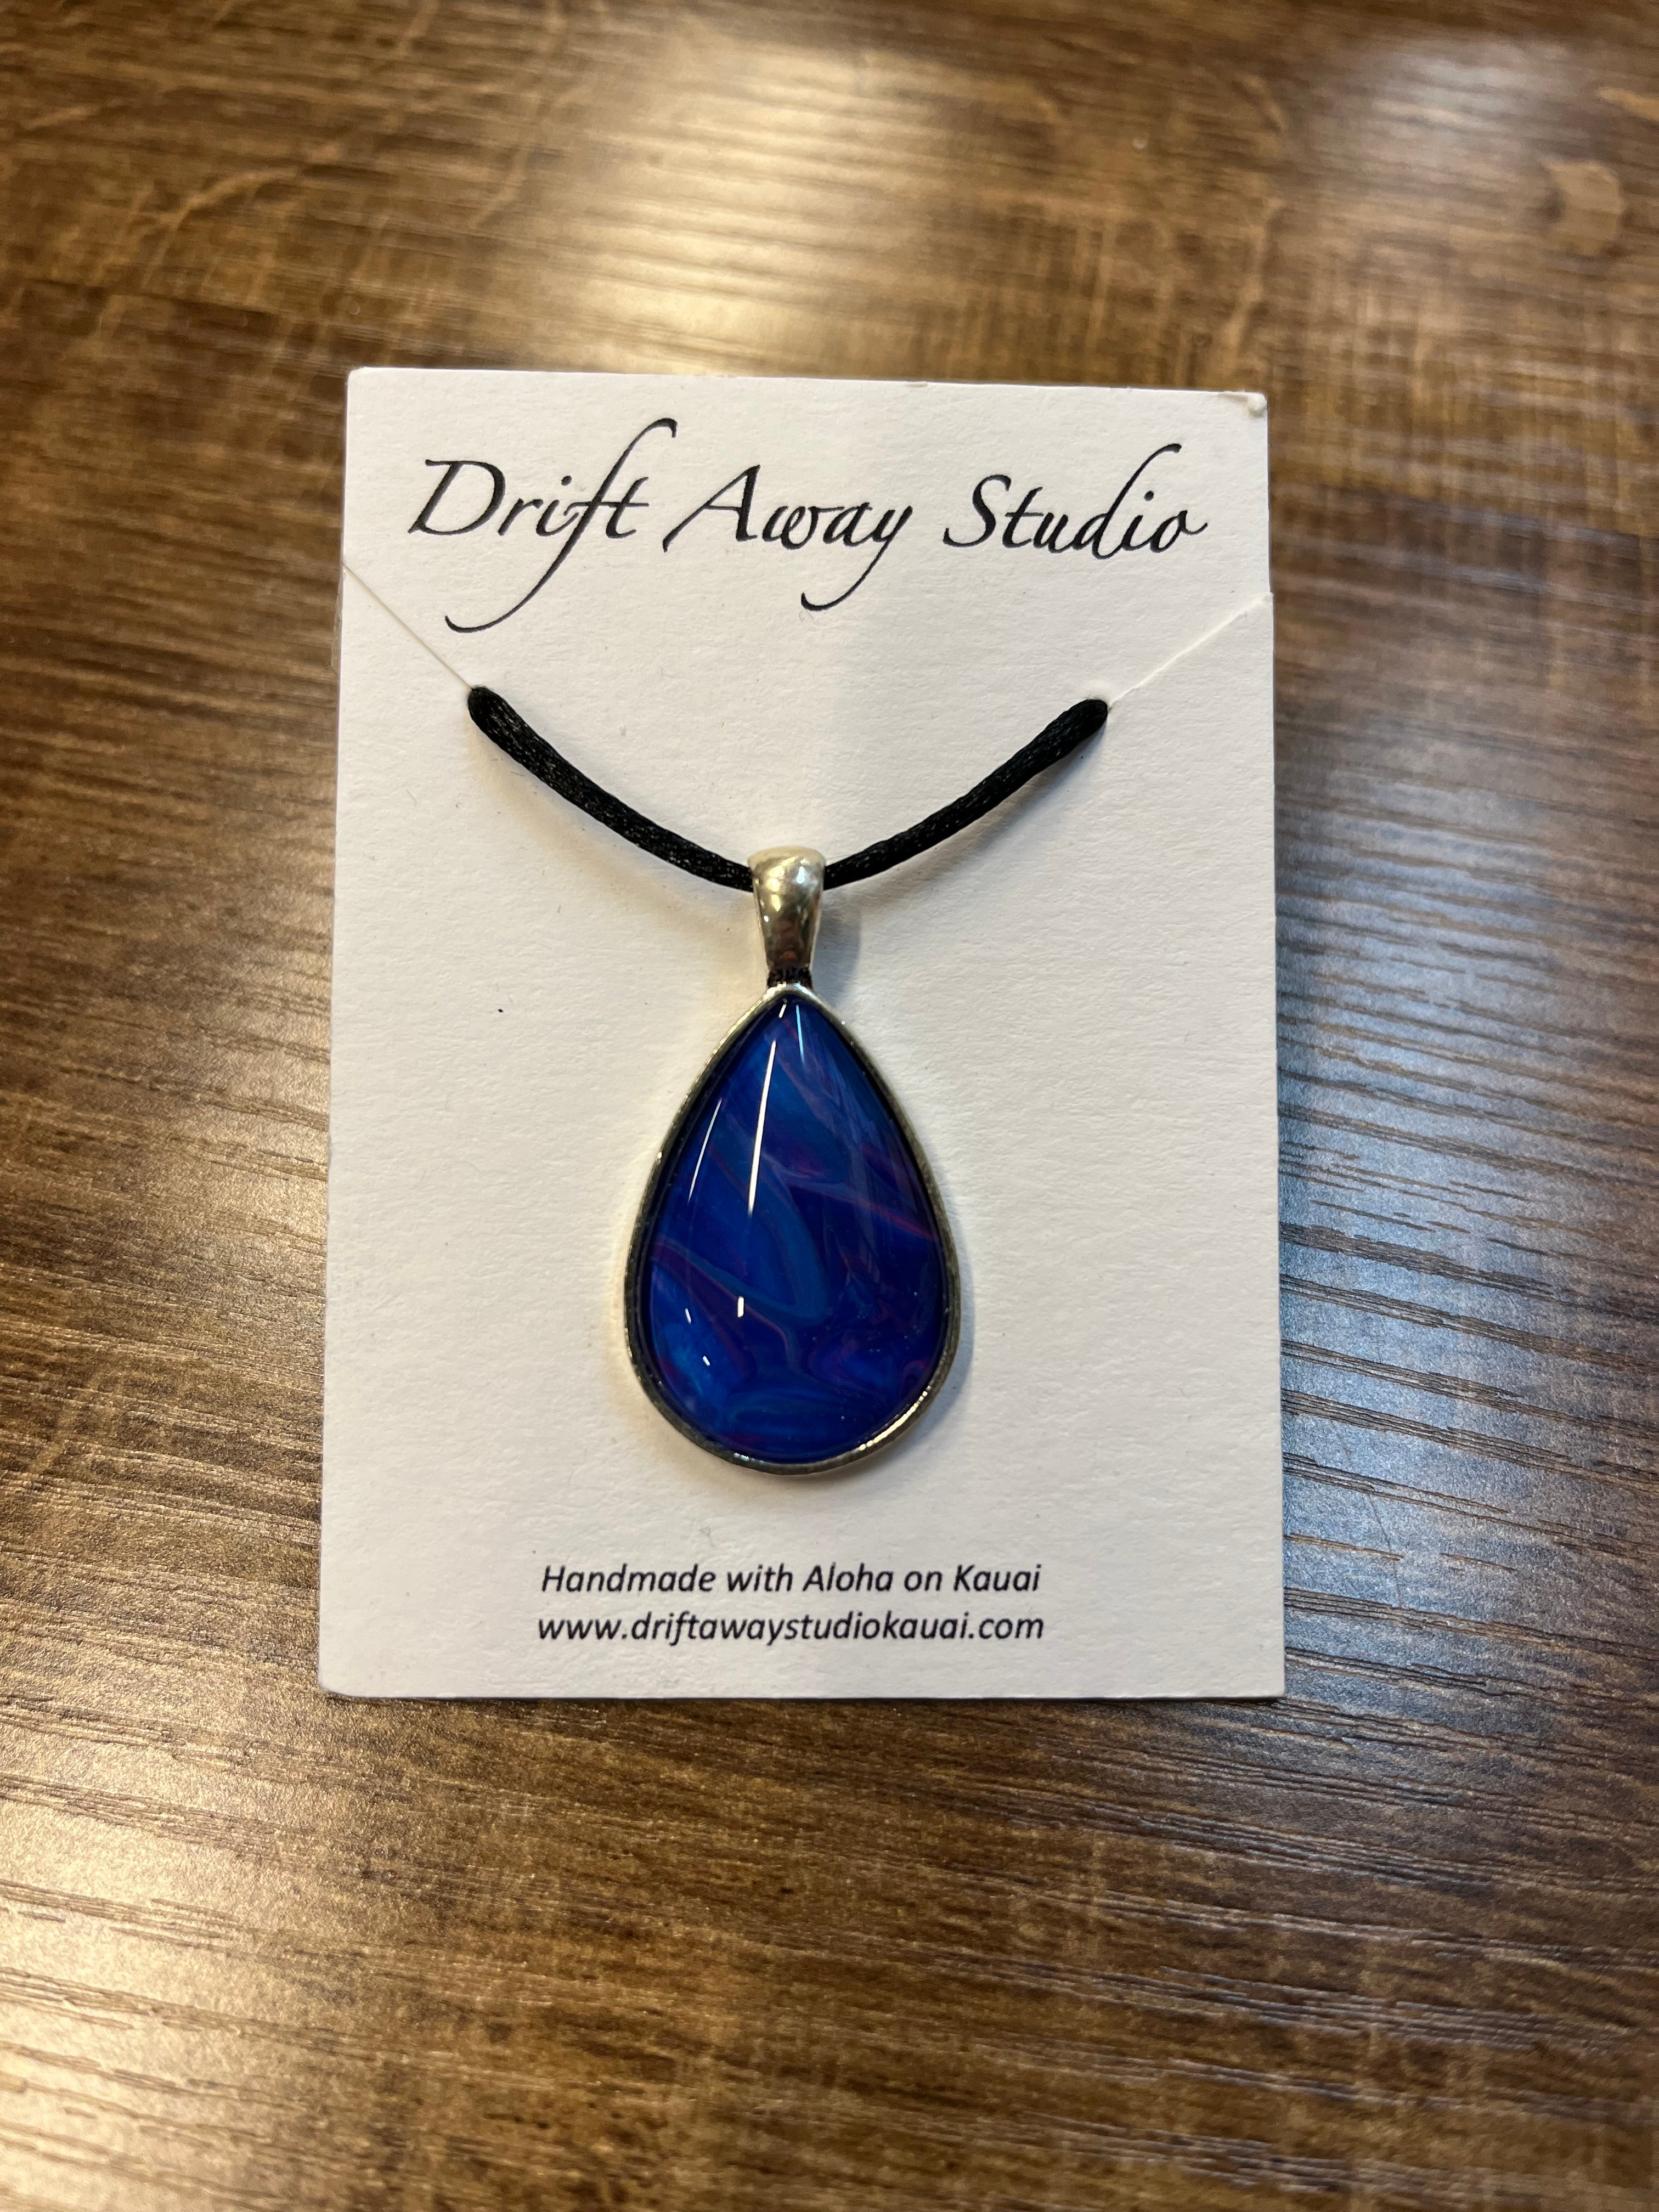 Drift Away Studio Jewelry